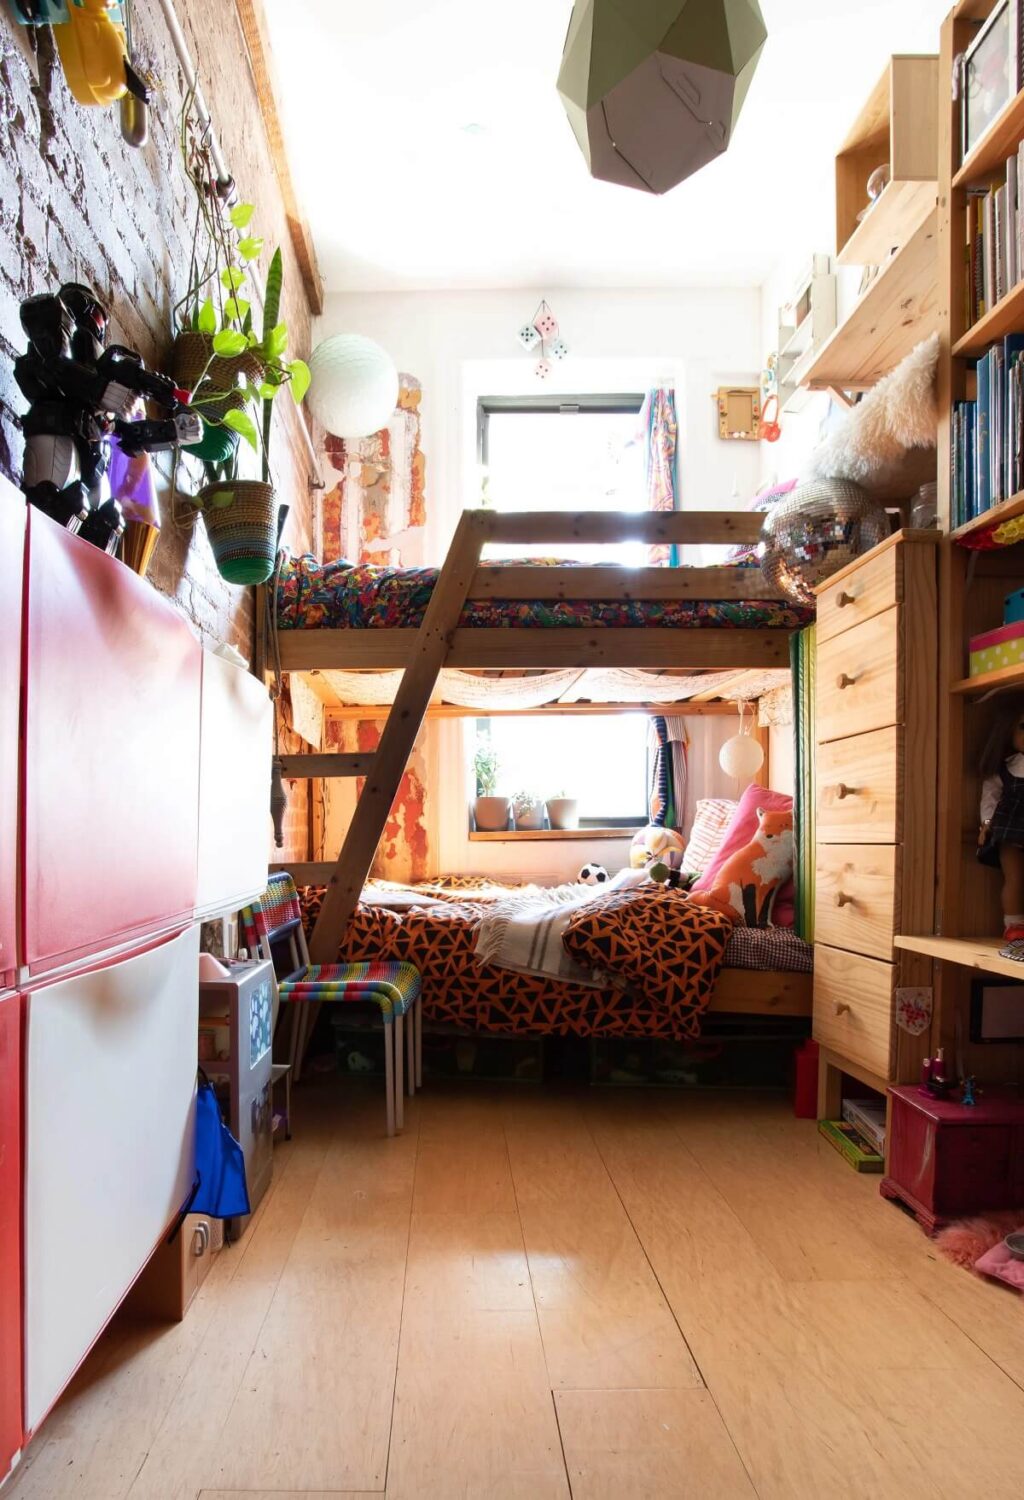 bunk-beds-floor-to-ceiling-storage-dorm-room-ideas-nordroom